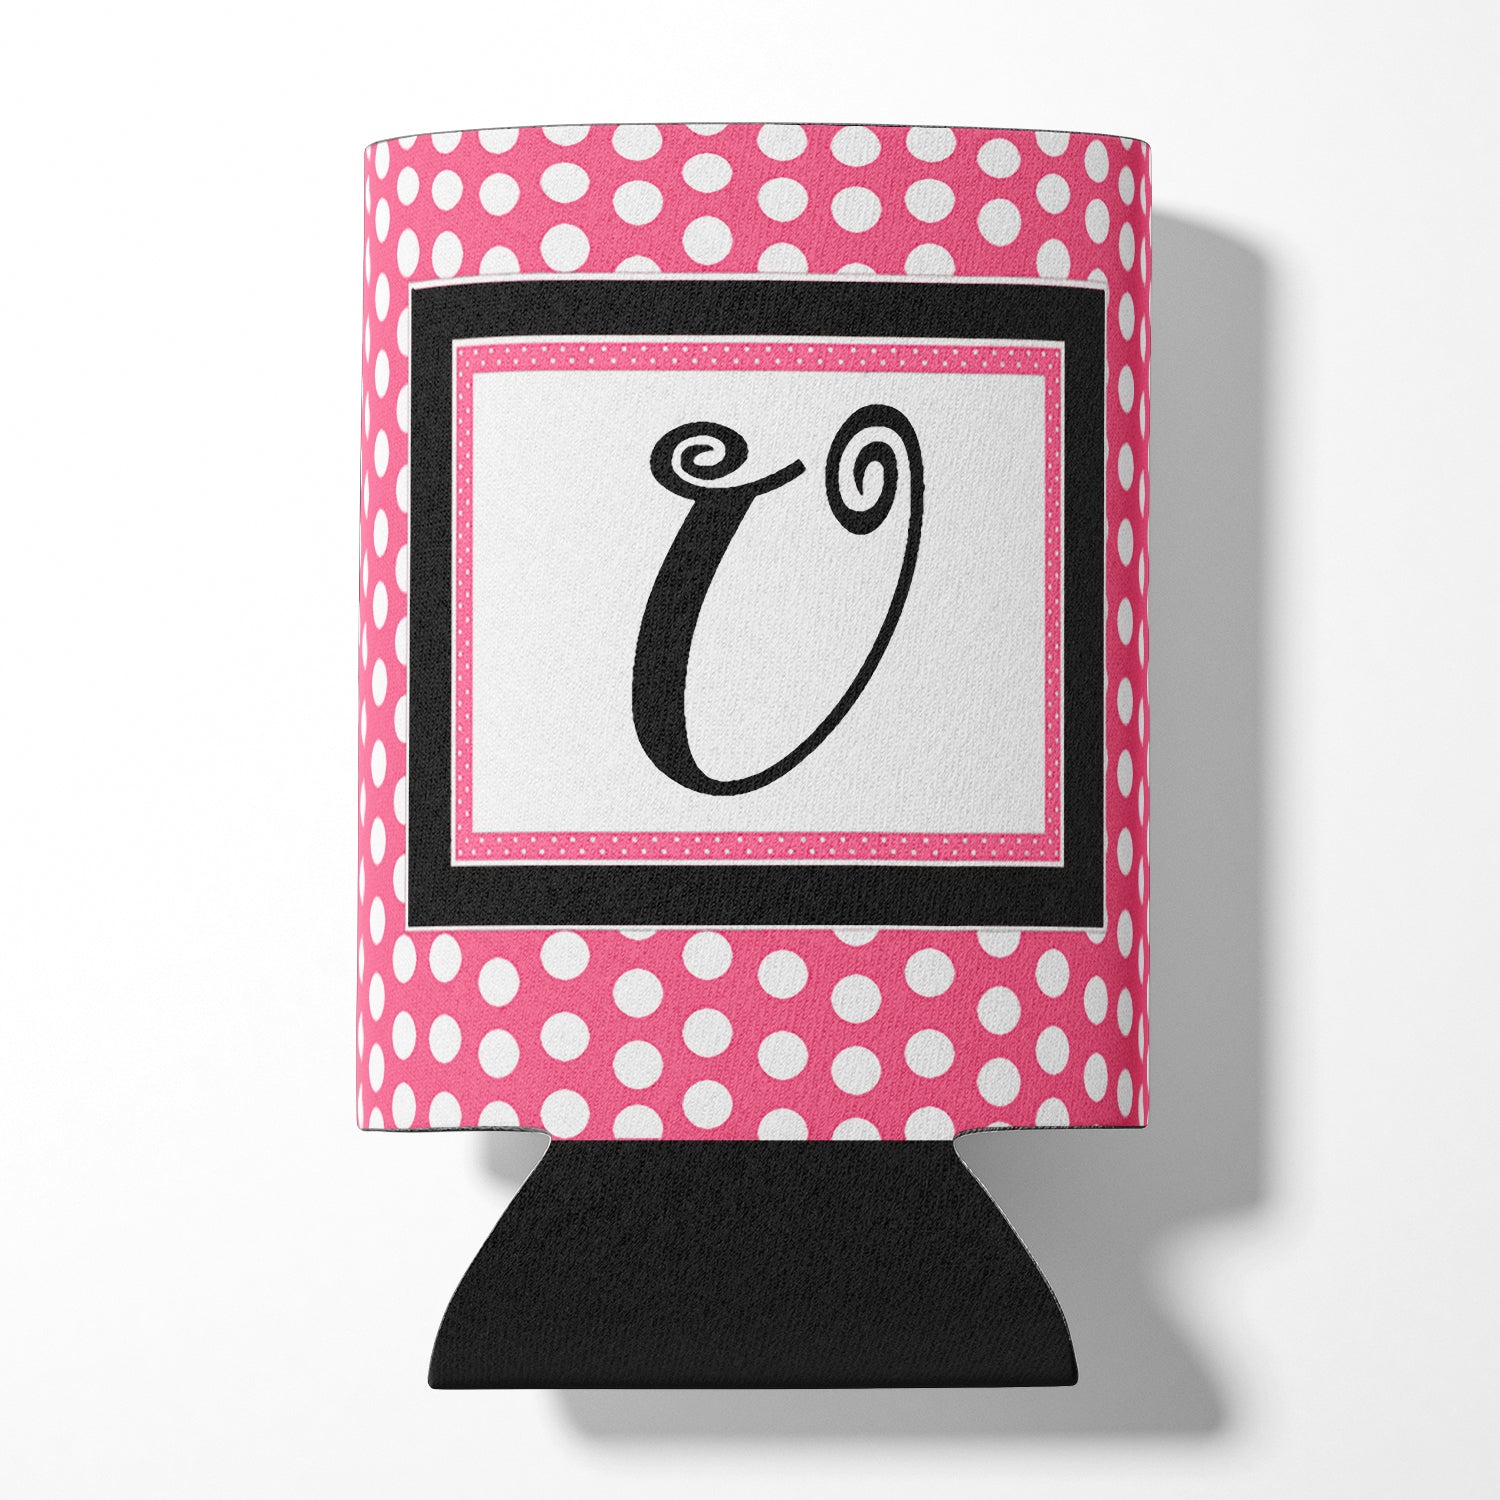 Letter U Initial Monogram - Pink Black Polka Dots Can or Bottle Beverage Insulator Hugger